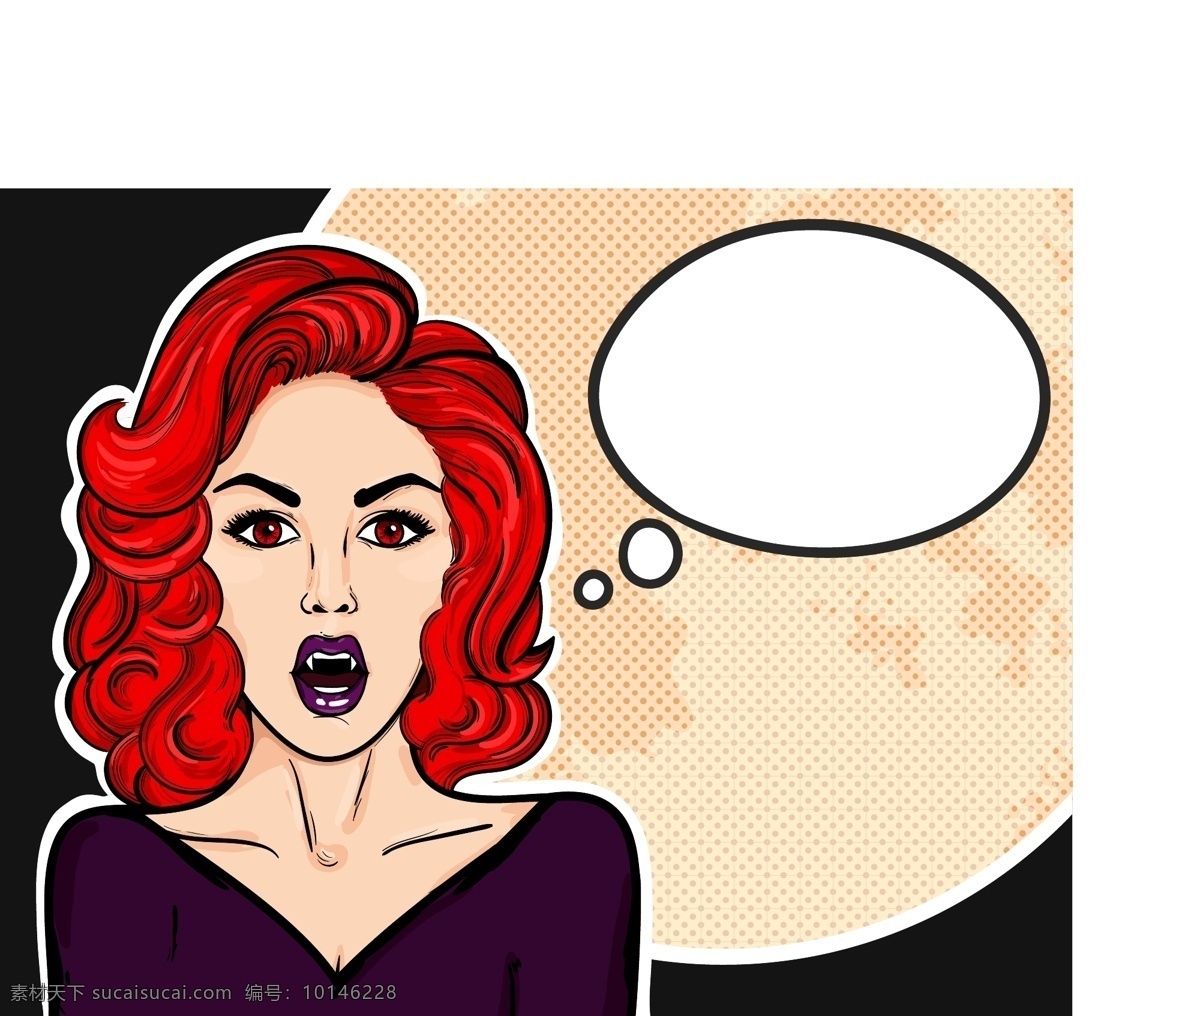 红 发 美女 欧美 卡通 海报 漫画 风格 人物 矢量 月亮 对话框 风景 插画 手绘 扁平化 矢量素材